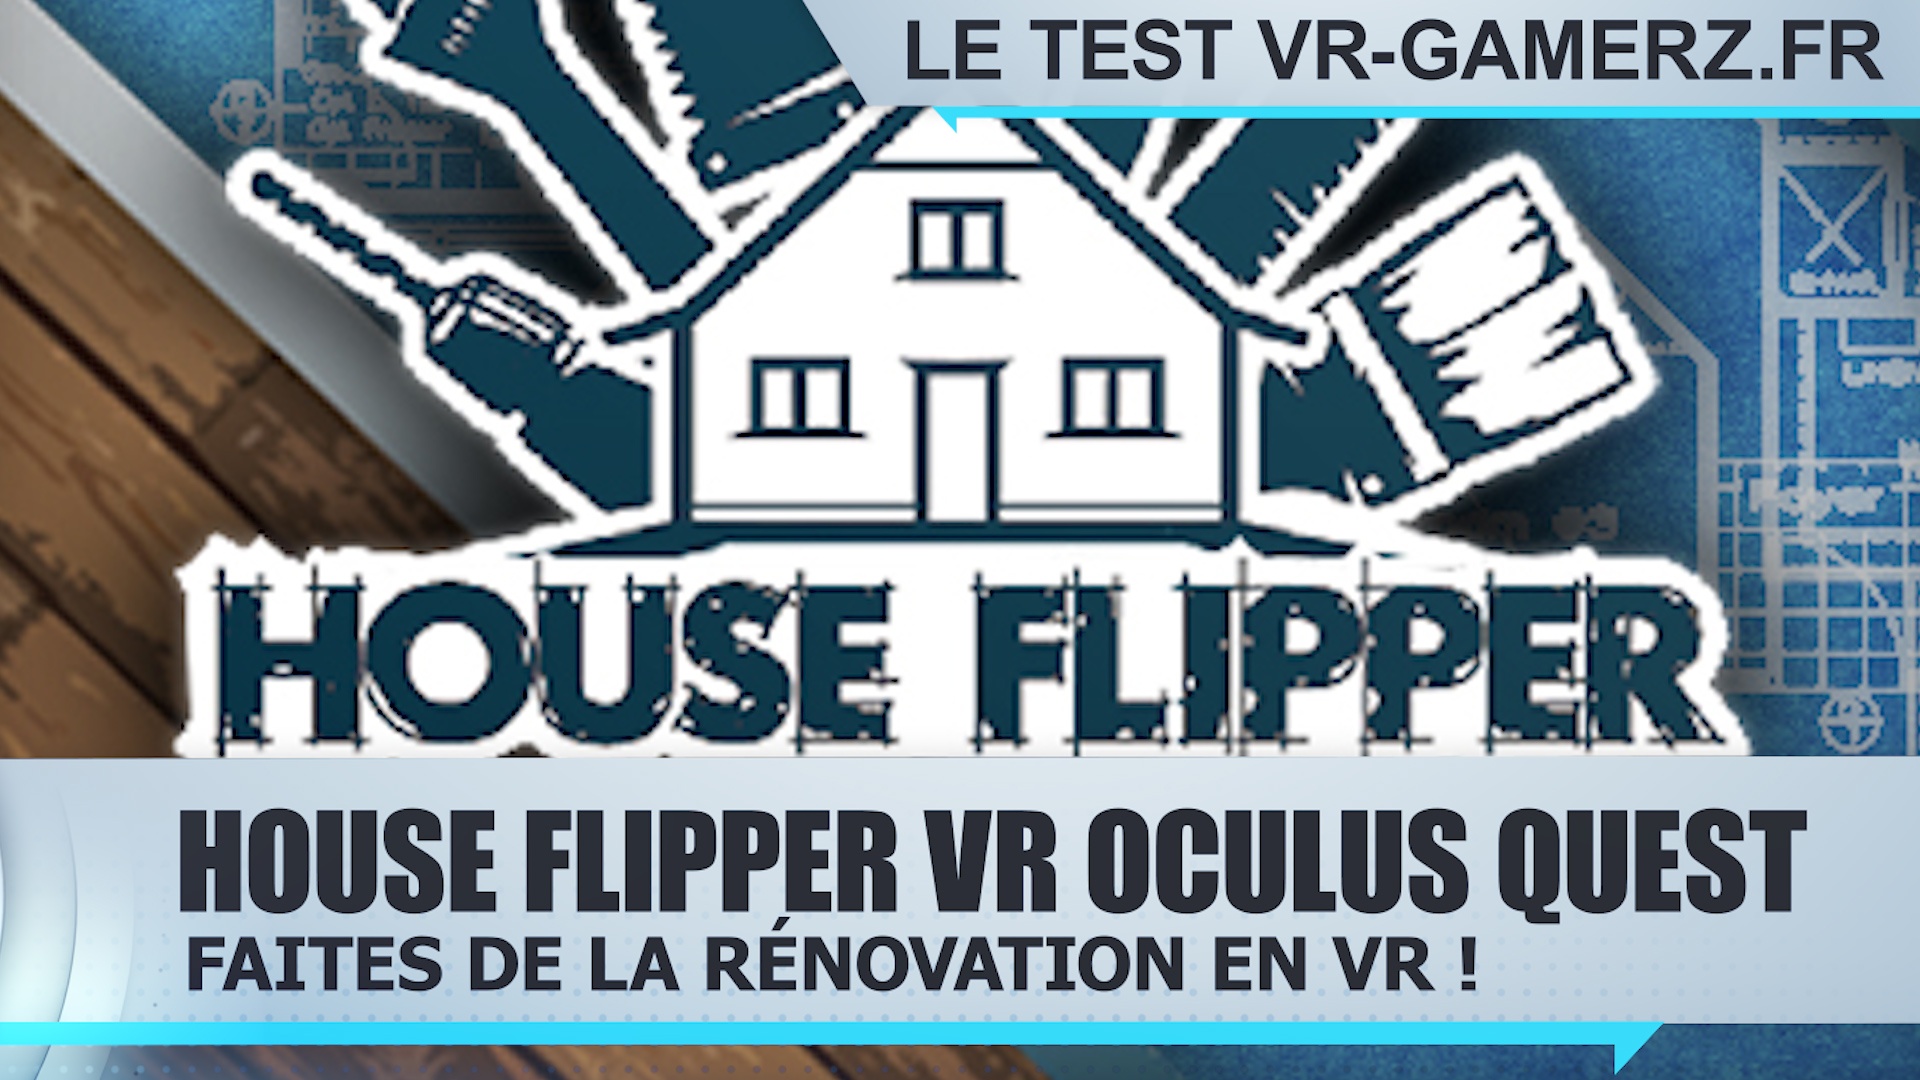 Test House Flipper VR Oculus quest : Faites de la rénovation en VR !